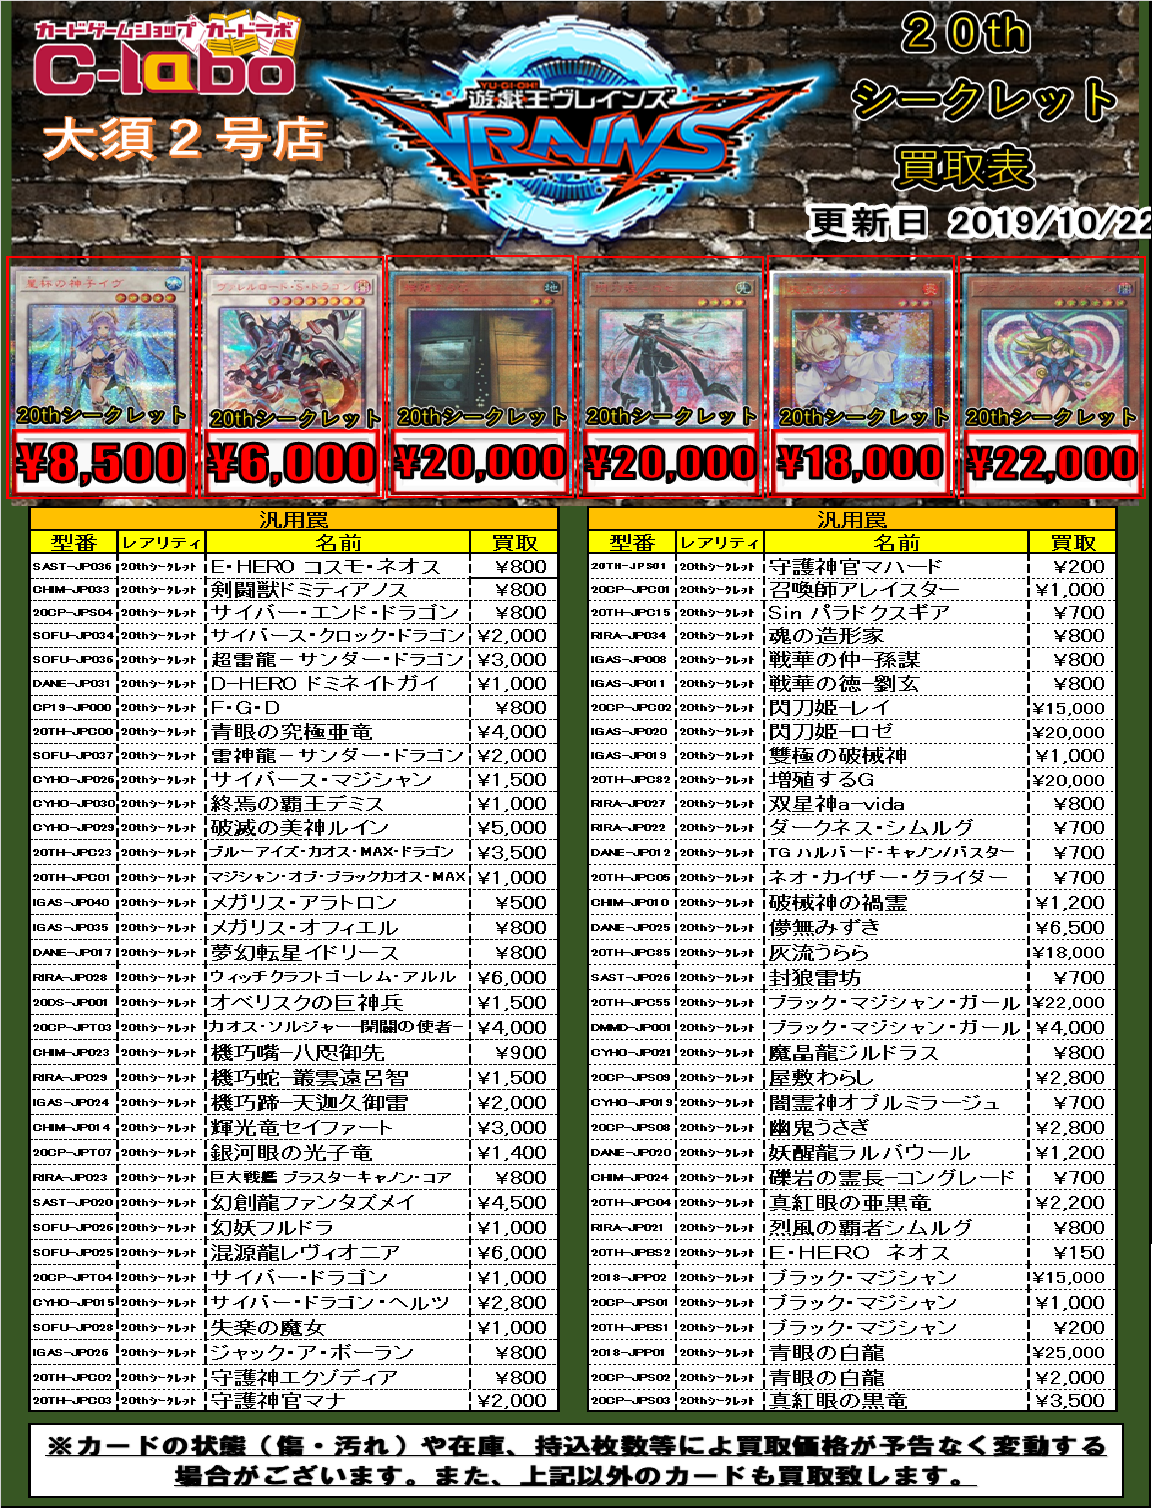 遊戯王 20thシークレット買取情報！！ / の店舗ブログ - カードラボ